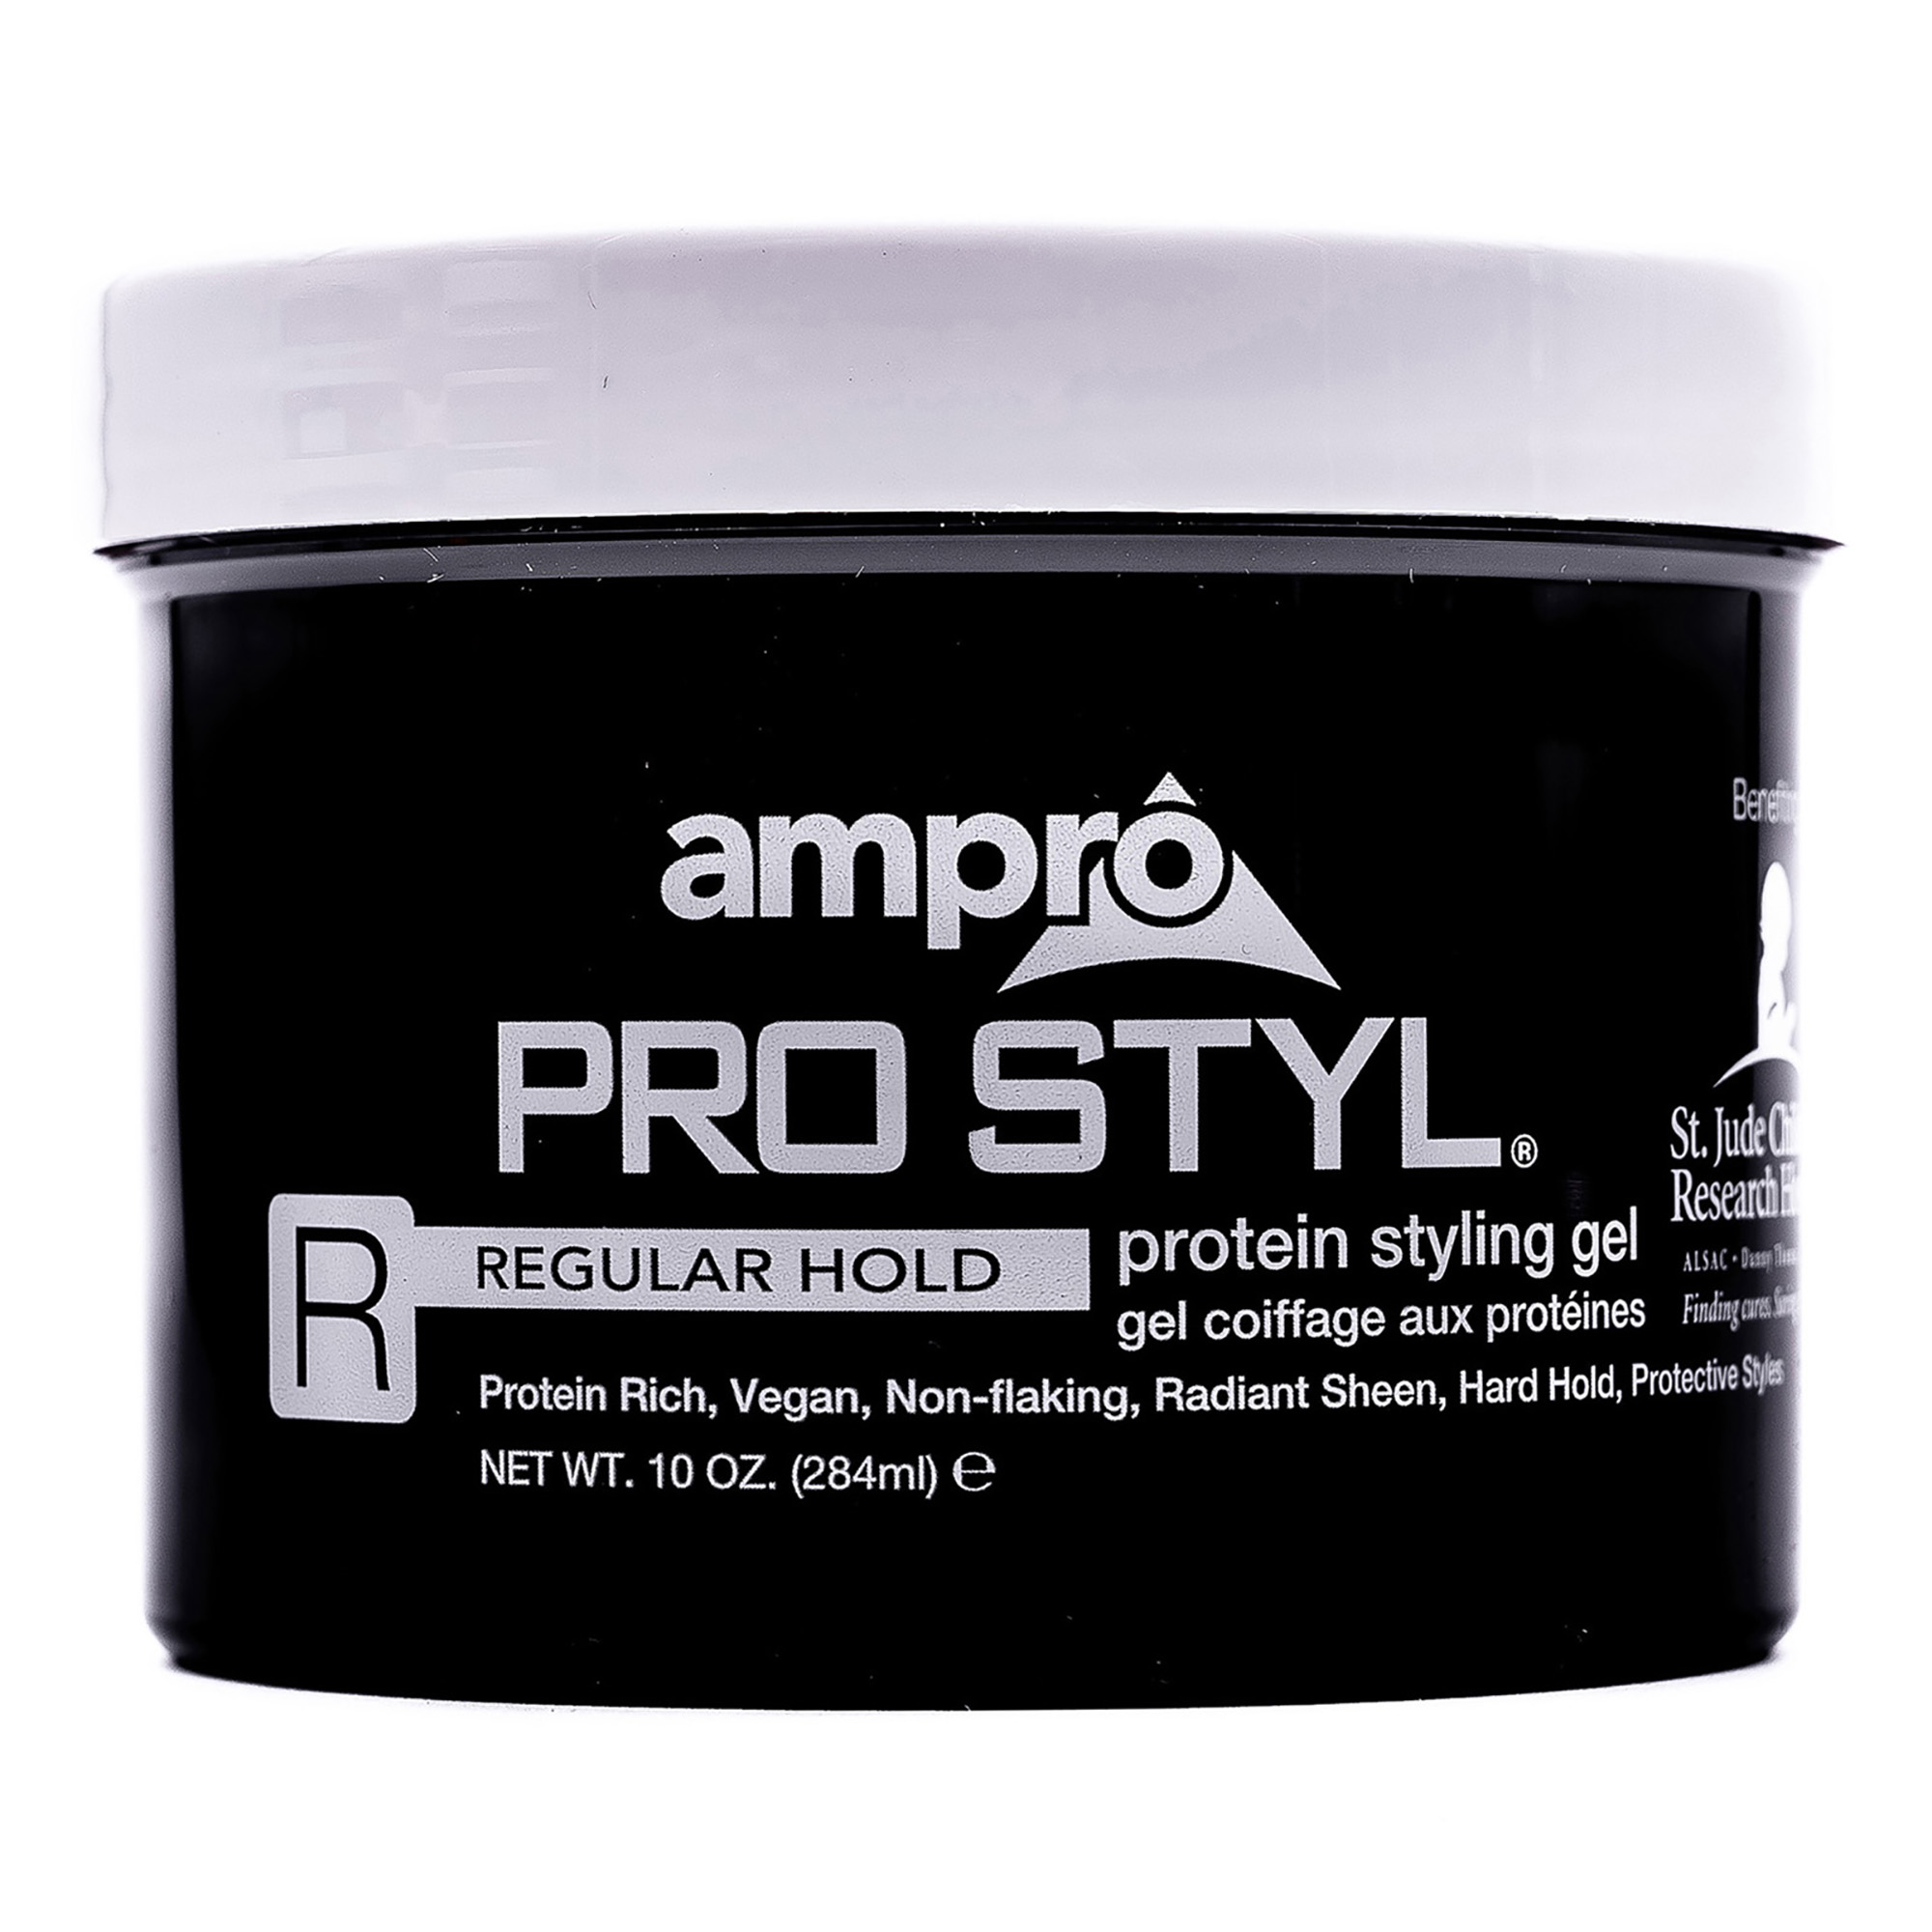 Ampro Pro Styl Regular Hold Protein Styling Gel, 10 oz. Moisturizing, Unisex - image 1 of 6